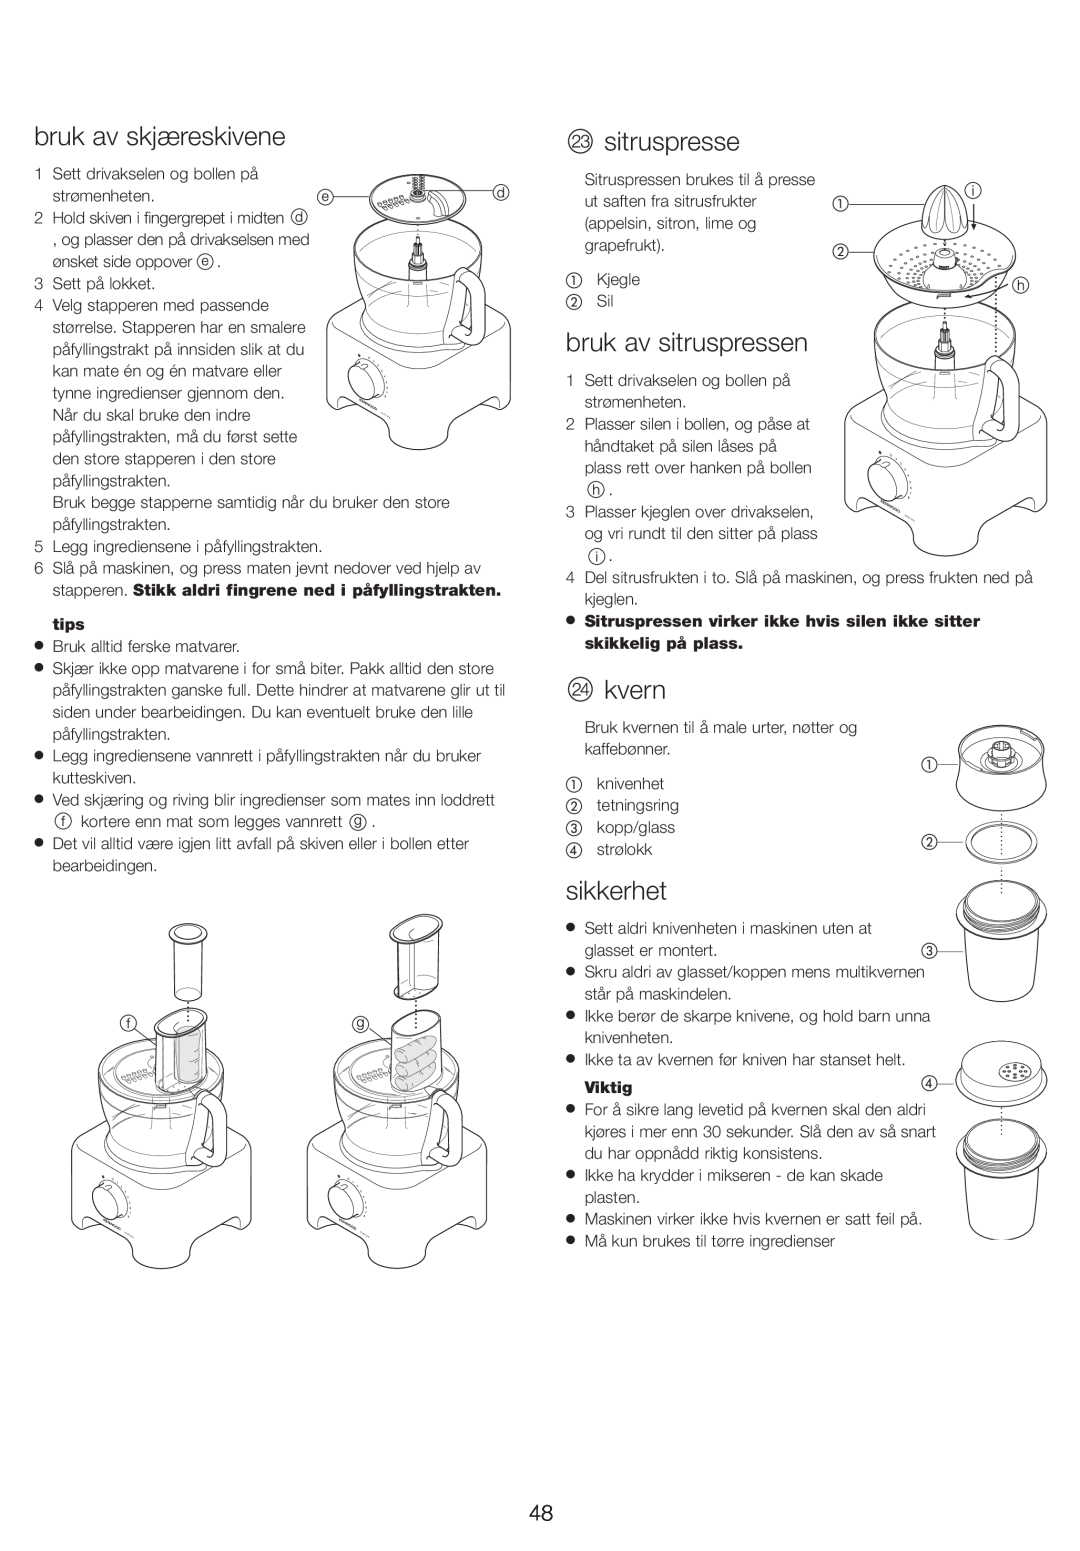 Kenwood FP730 series manual bruk av skjæreskivene, bruk av sitruspressen, kvern, Viktig, sikkerhet, tips 